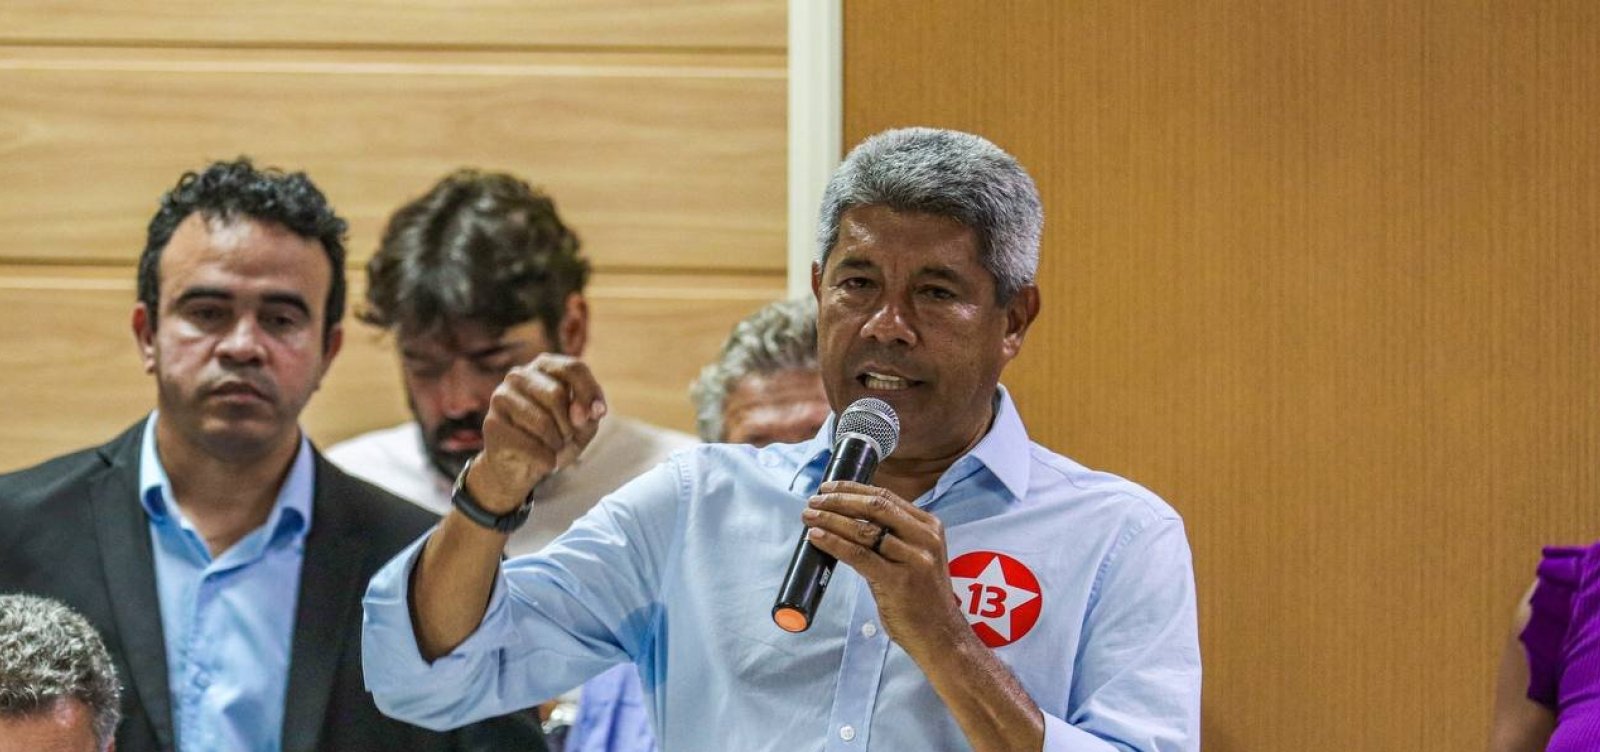 QG de Jerônimo Rodrigues avalia se valerá a pena participar dos debates no 2º turno